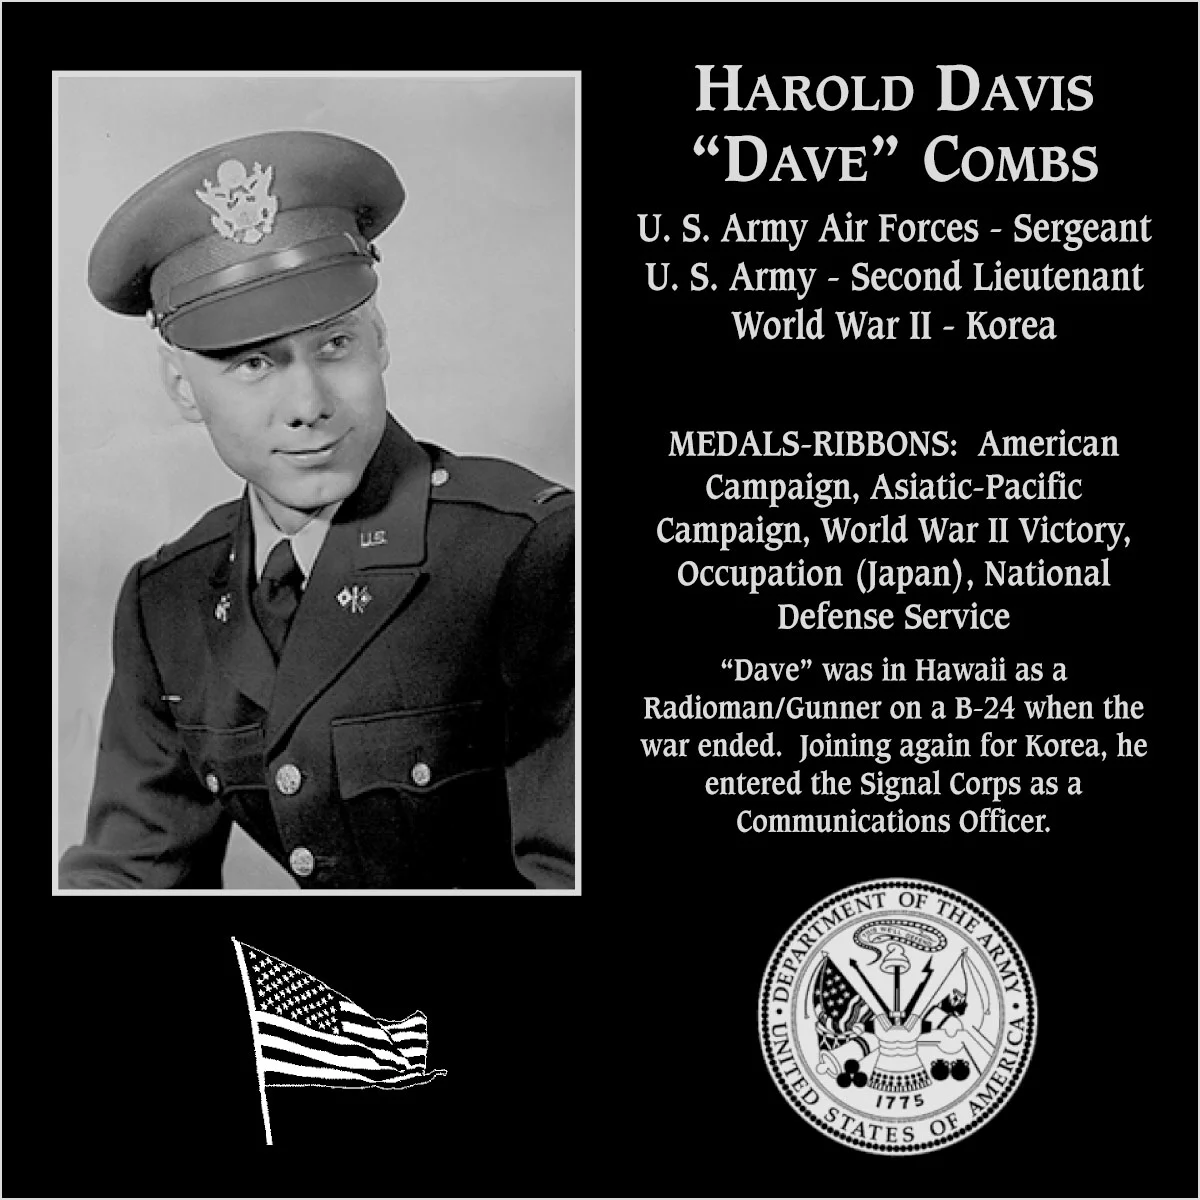 Harold Davis “Dave” Combs